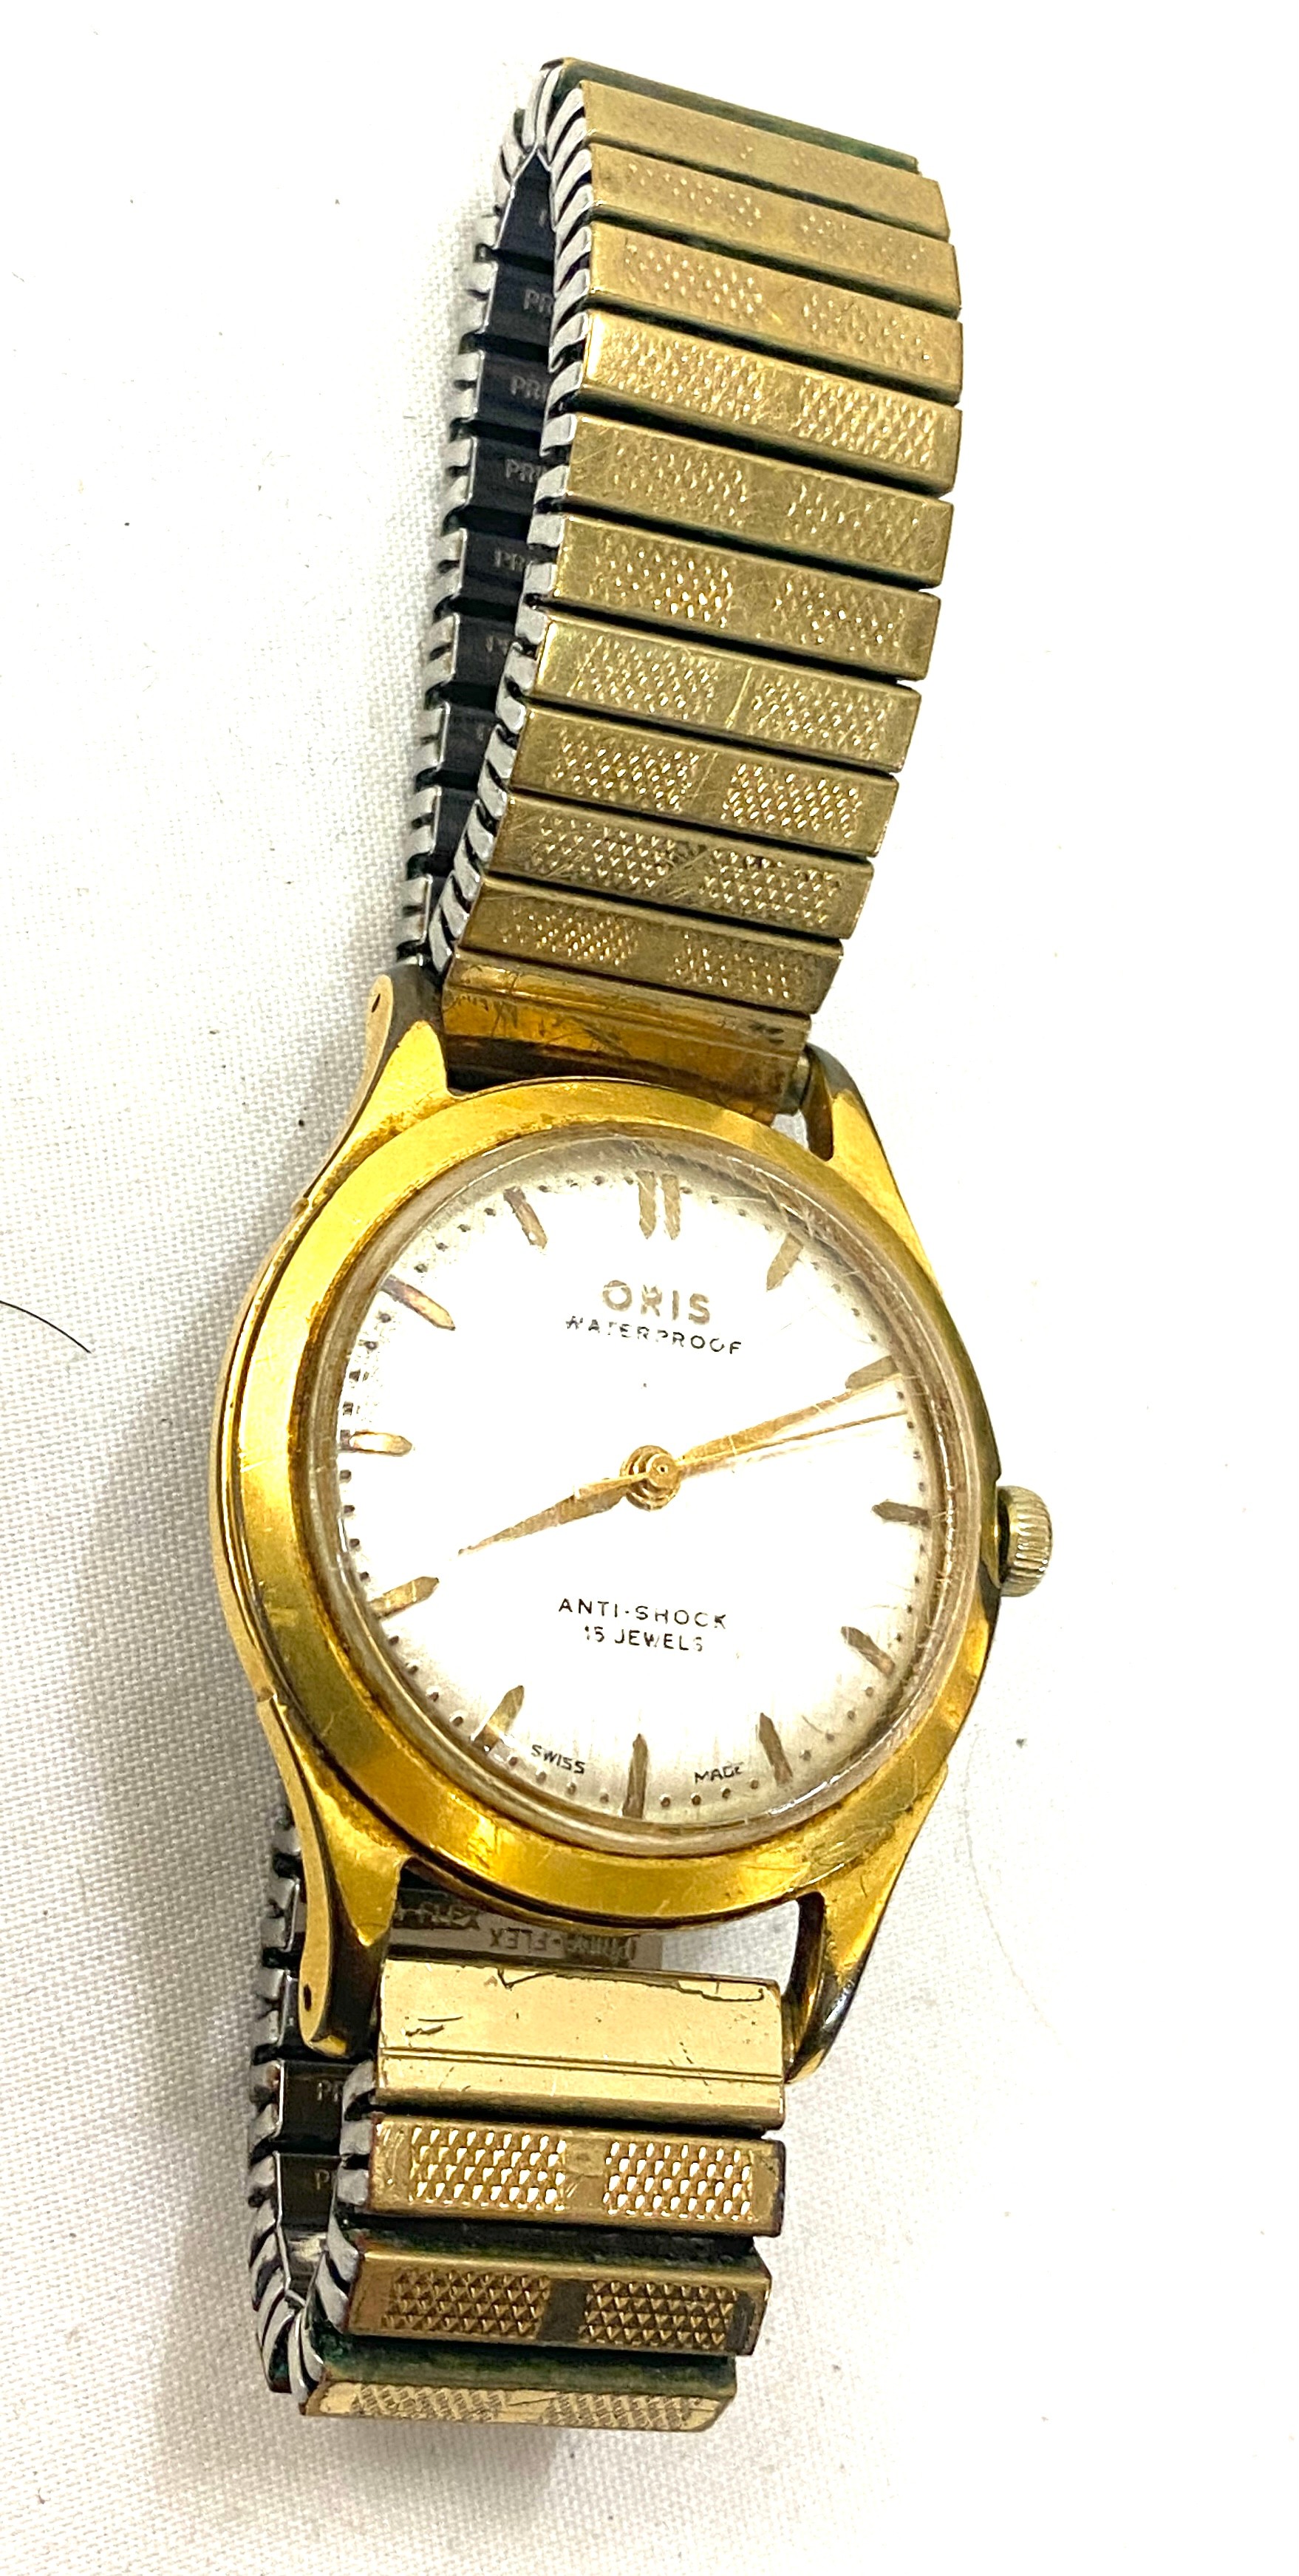 Gents Oris waterproof, anti shock 15 jewel wristwatch, ticks, no warranty given - Image 4 of 5